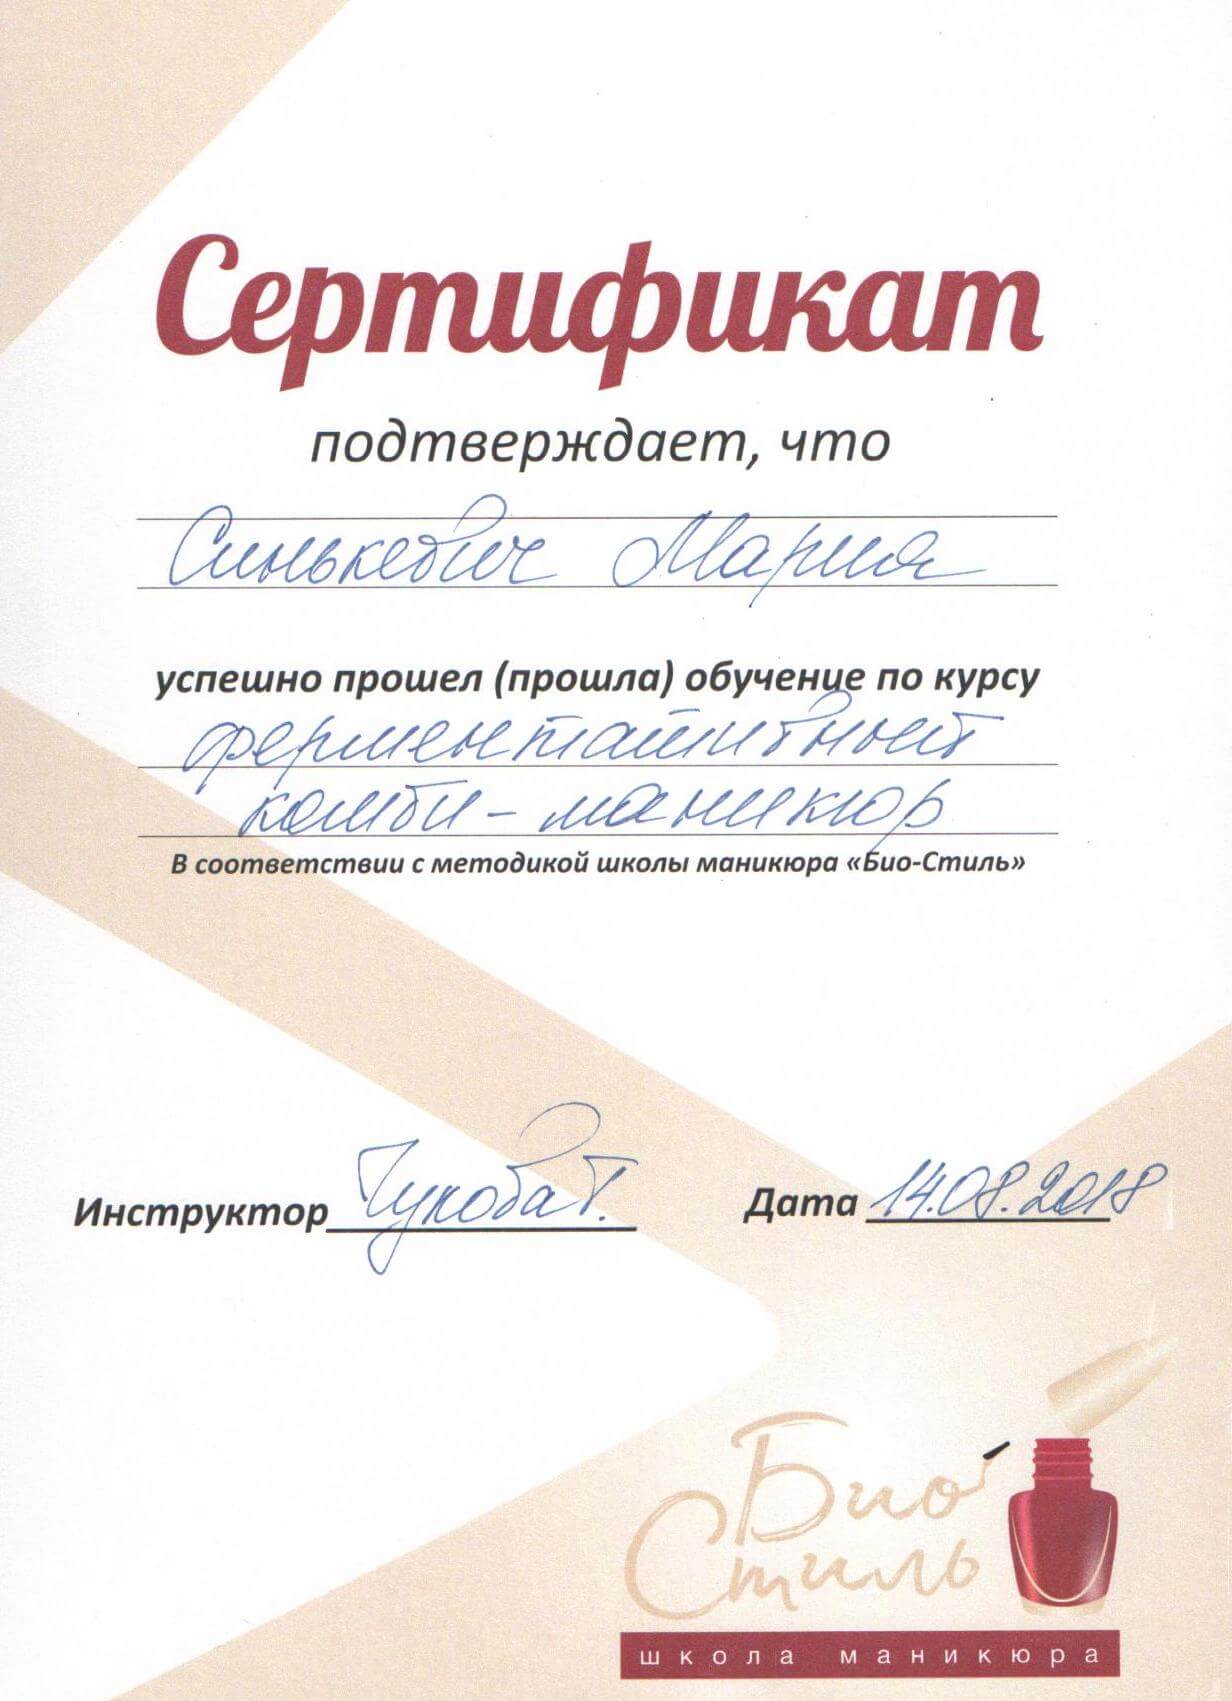 Сертификат - комби-маникюр